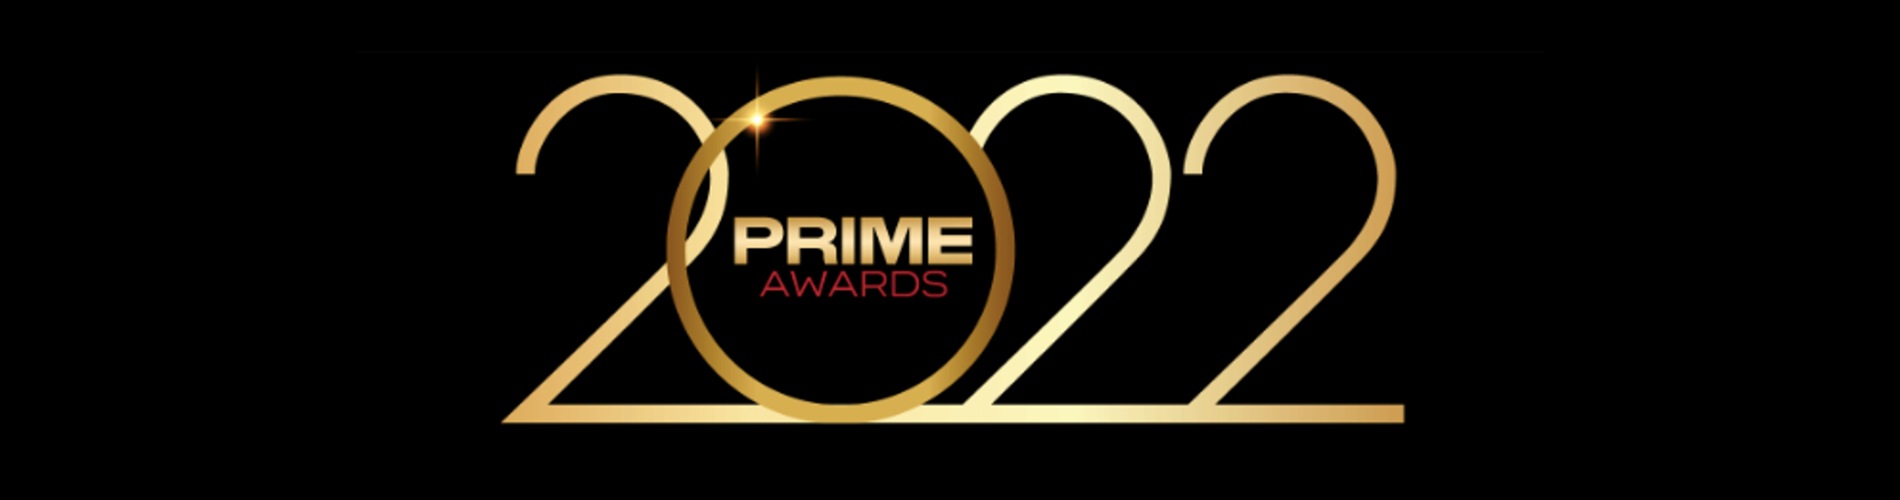 Prime Awards 2022